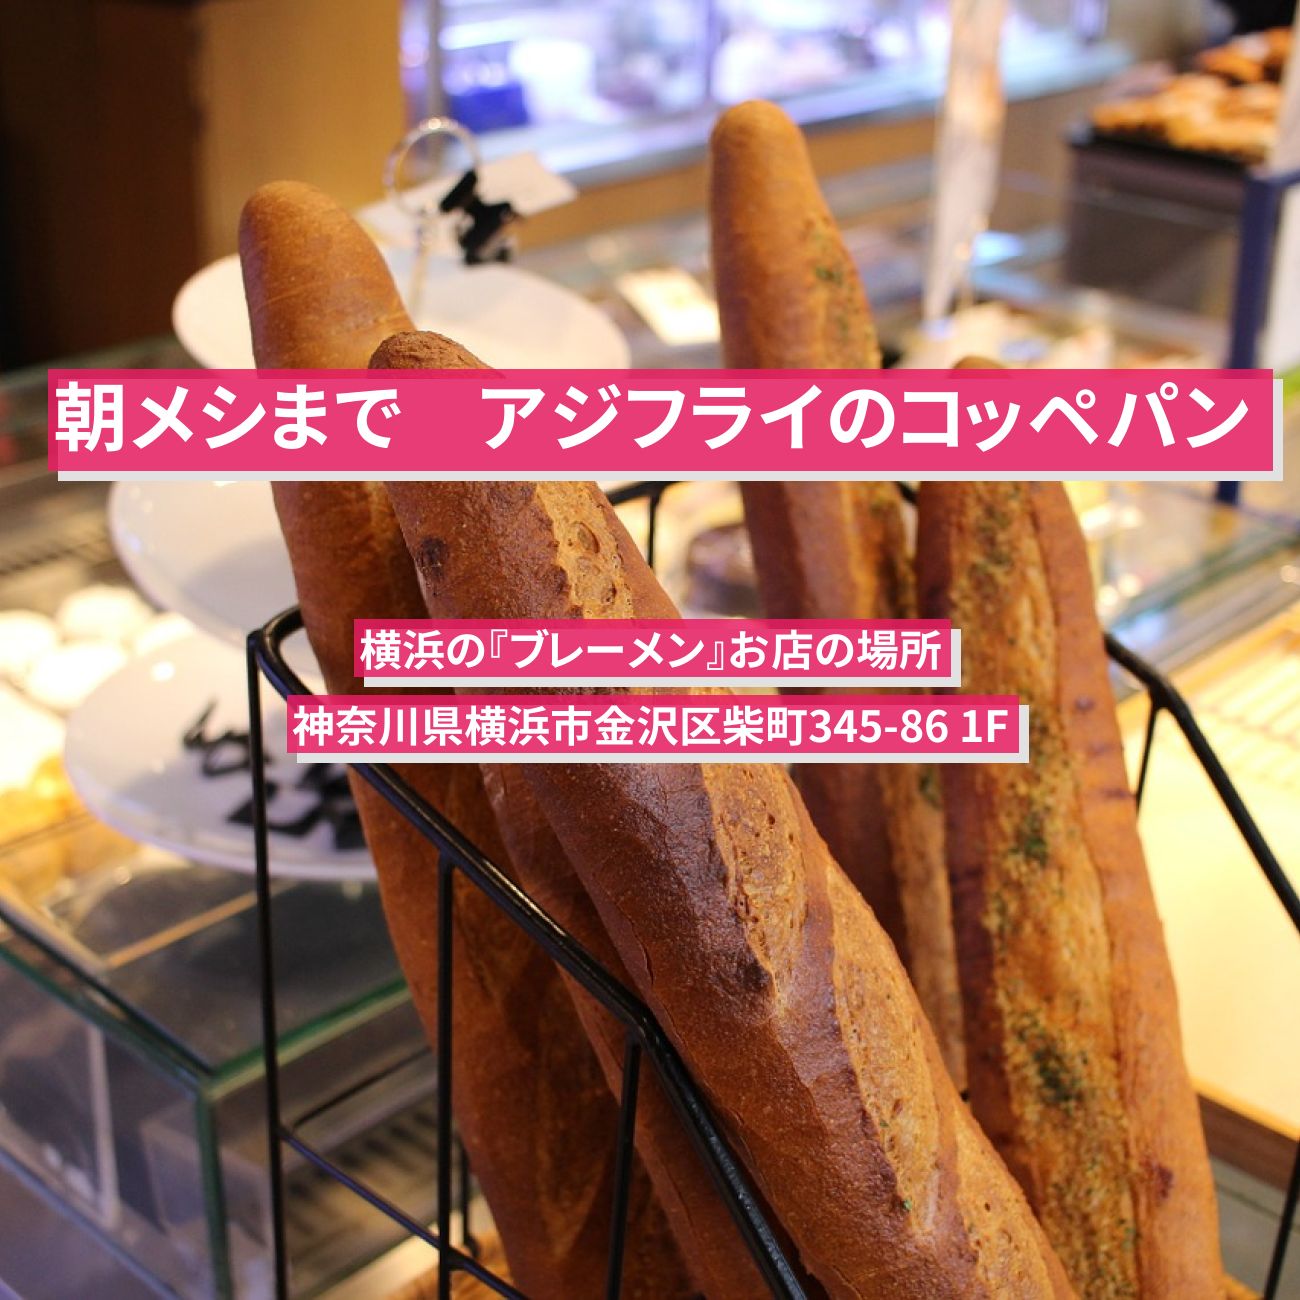 【朝メシまで】アジフライのコッペパン『ブレーメン』横浜のお店の場所